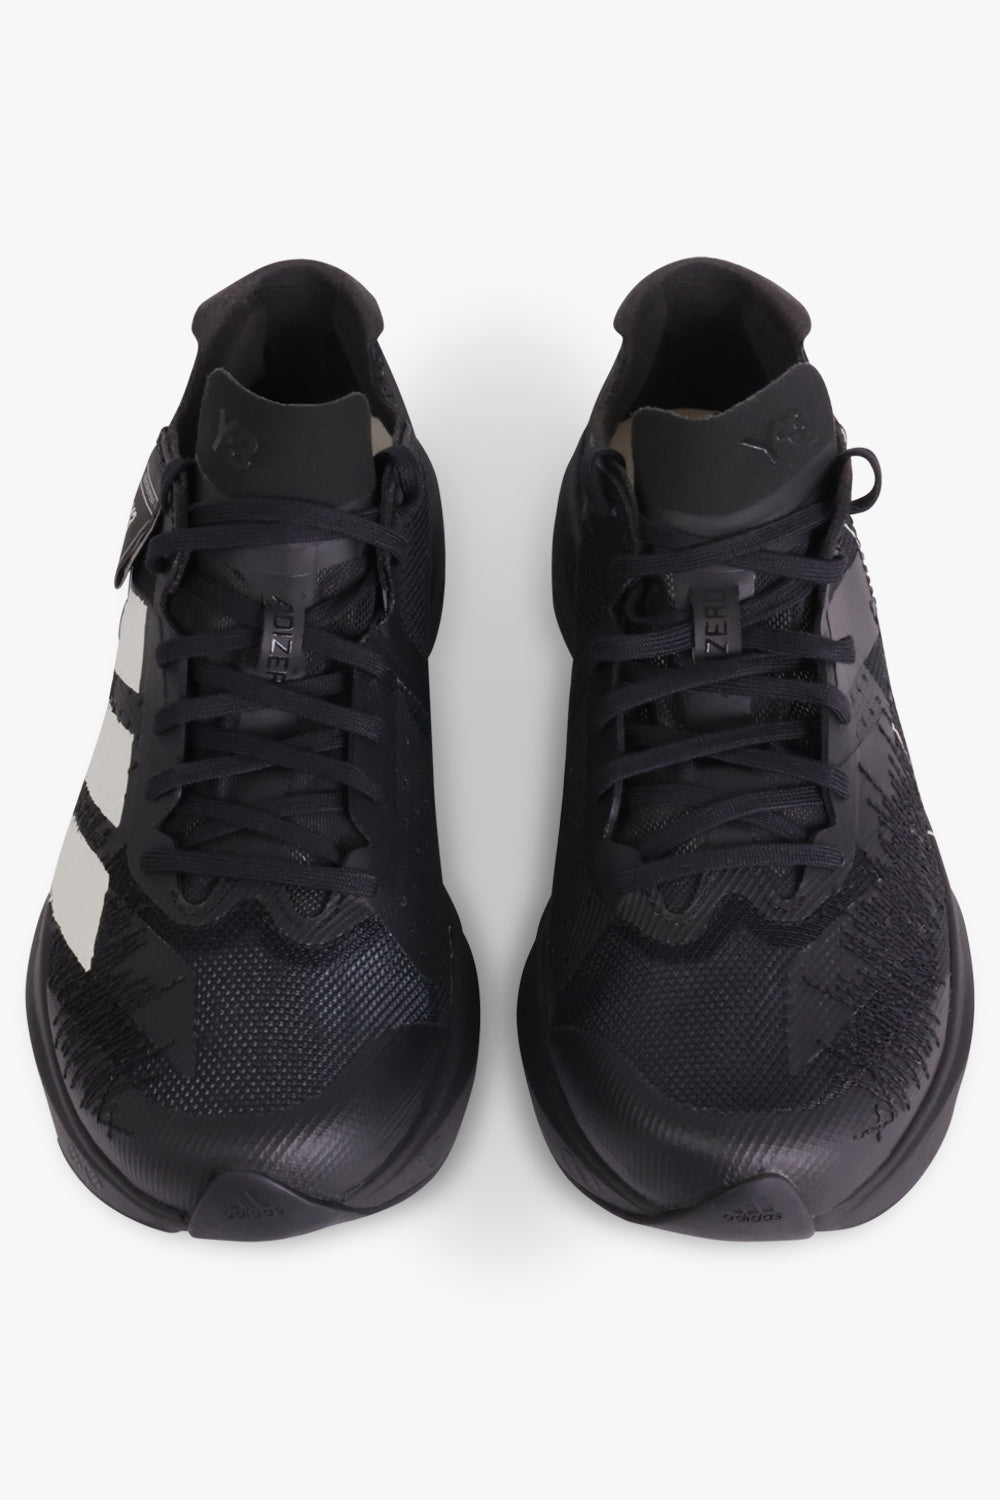 Y-3 SHOES Takumi Sen 9 Sneaker | Black/White